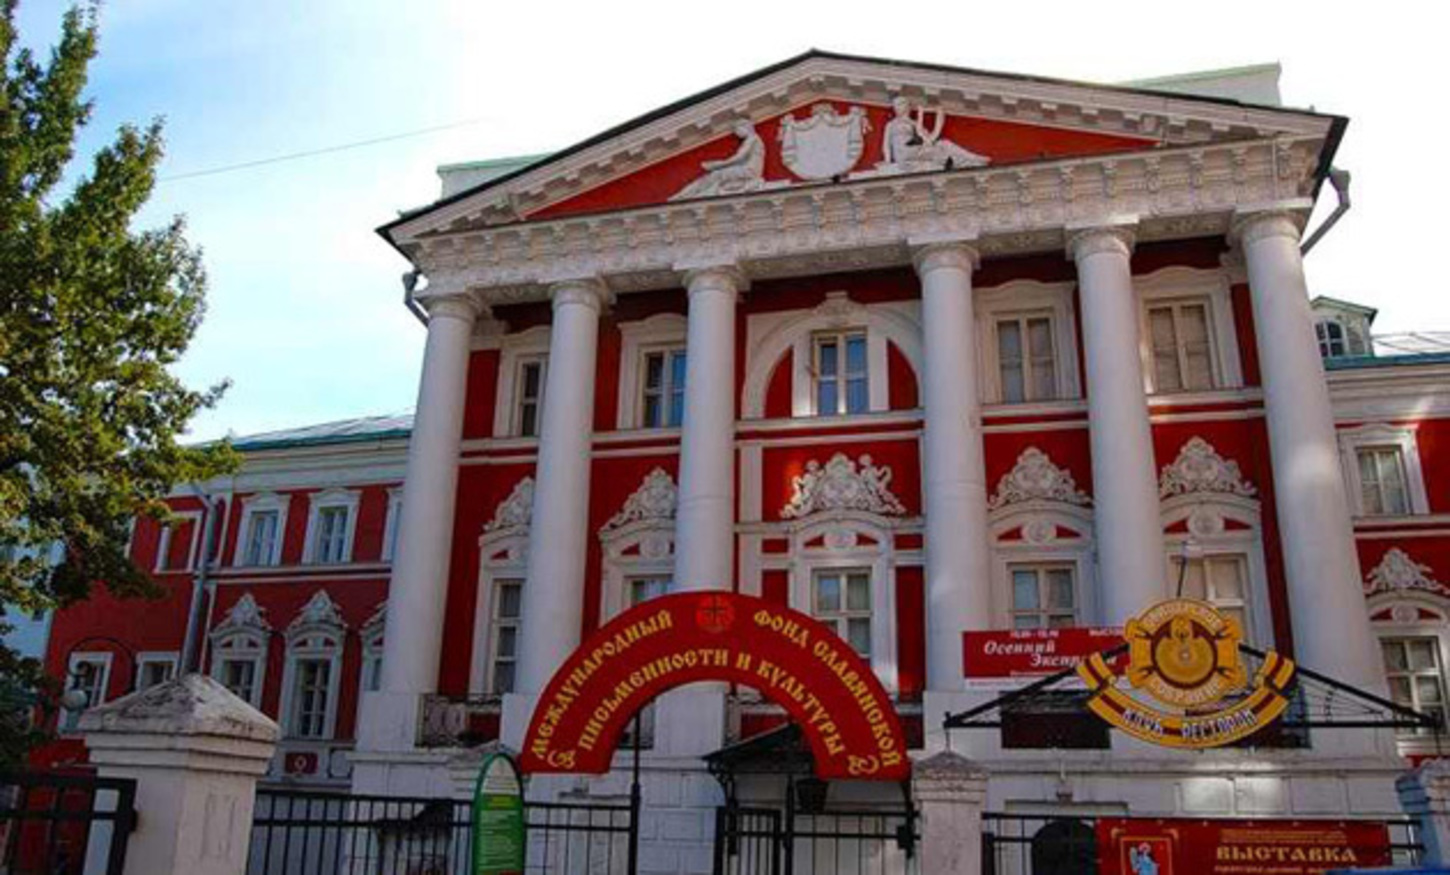 министерство культуры в москве